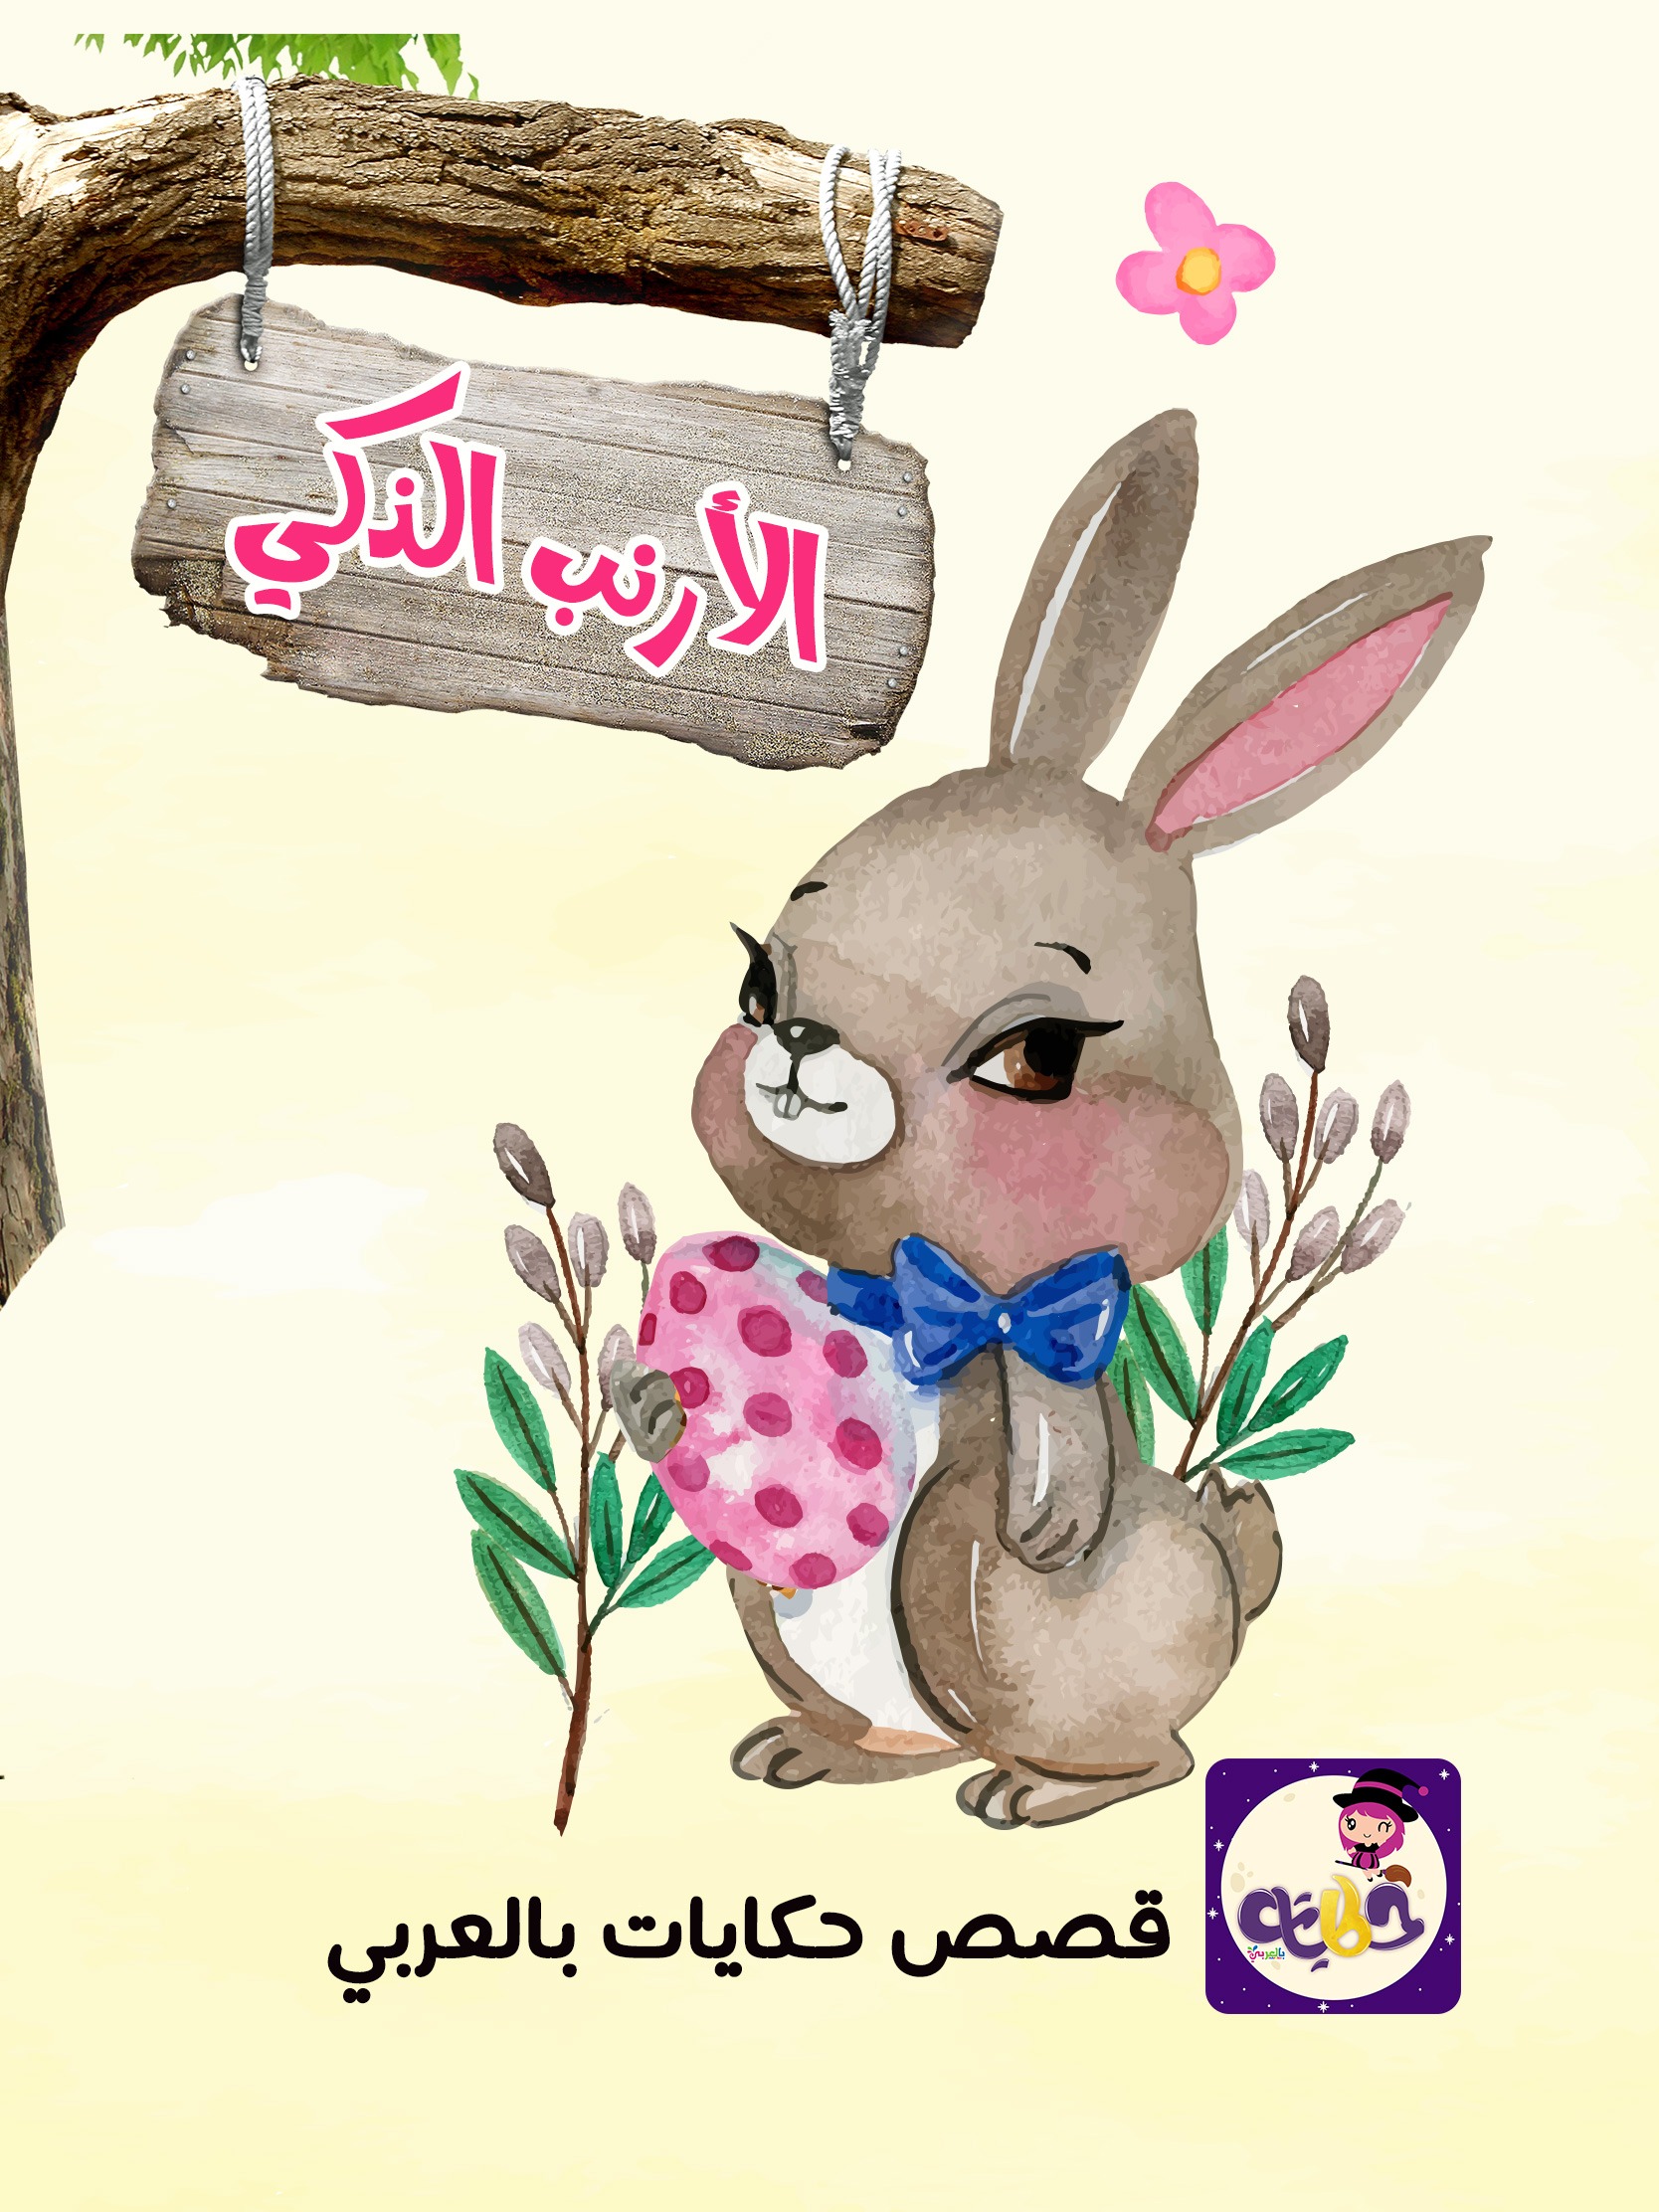 الأرنب الذكى.. بتطبيق قصص وحكايات بالعربي.. قصص هادفة وشيقة للاطفال